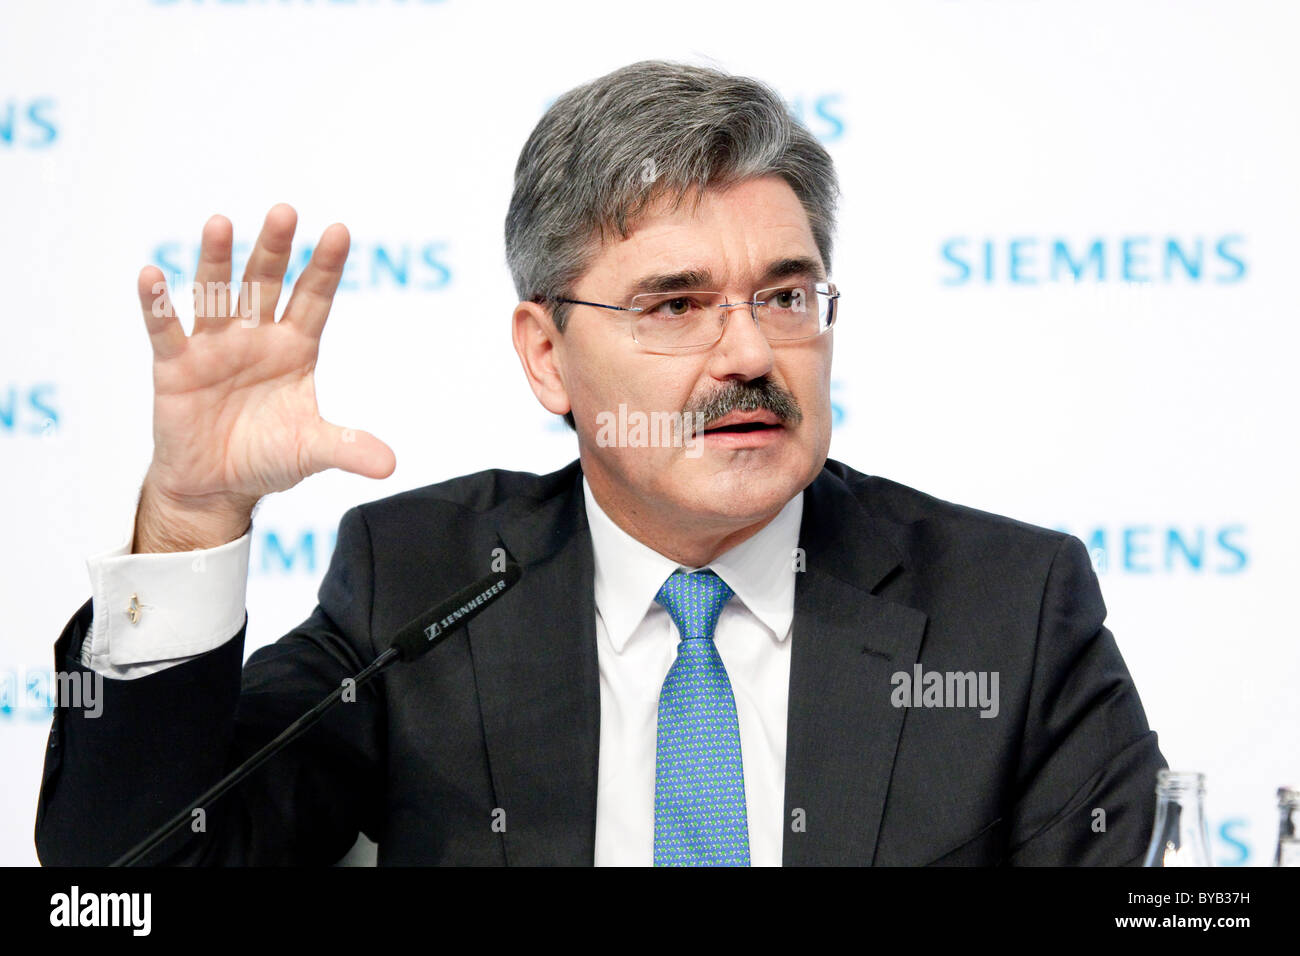 Jo Kaeser, Directeur financier de Siemens AG, au cours de la conférence de presse sur les états financiers sur 11.11.2010 à Munich Banque D'Images